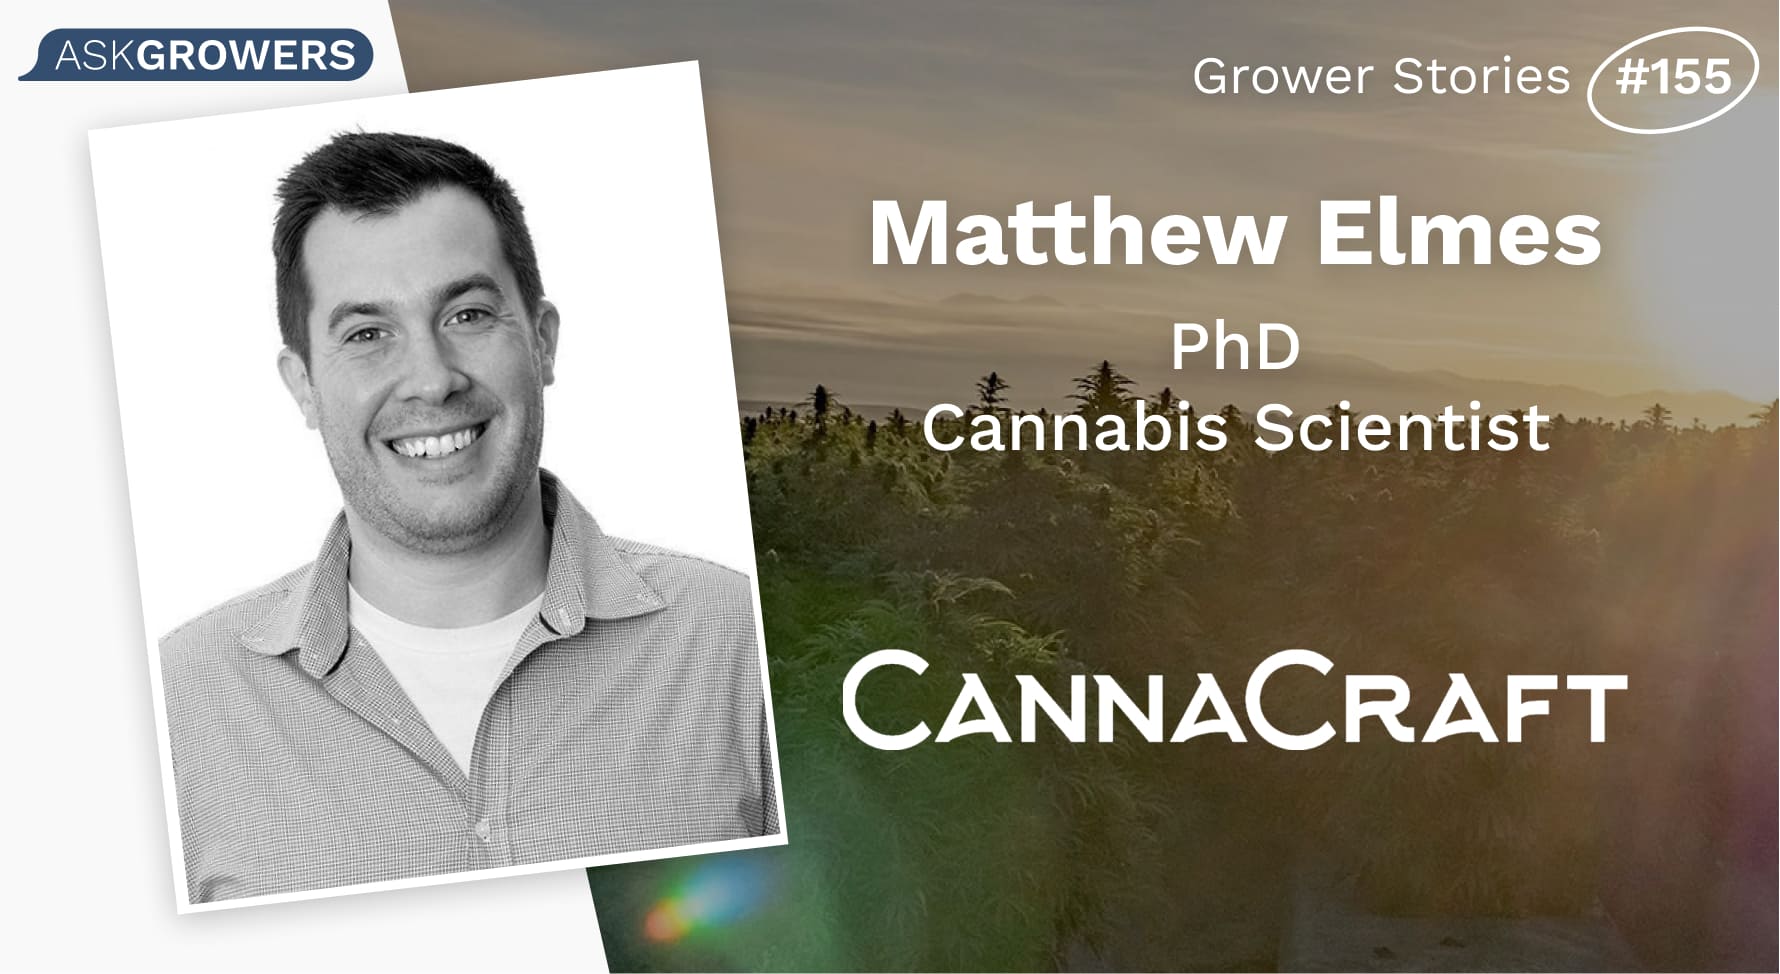 Grower Stories #155: Dr. Matthew Elmes